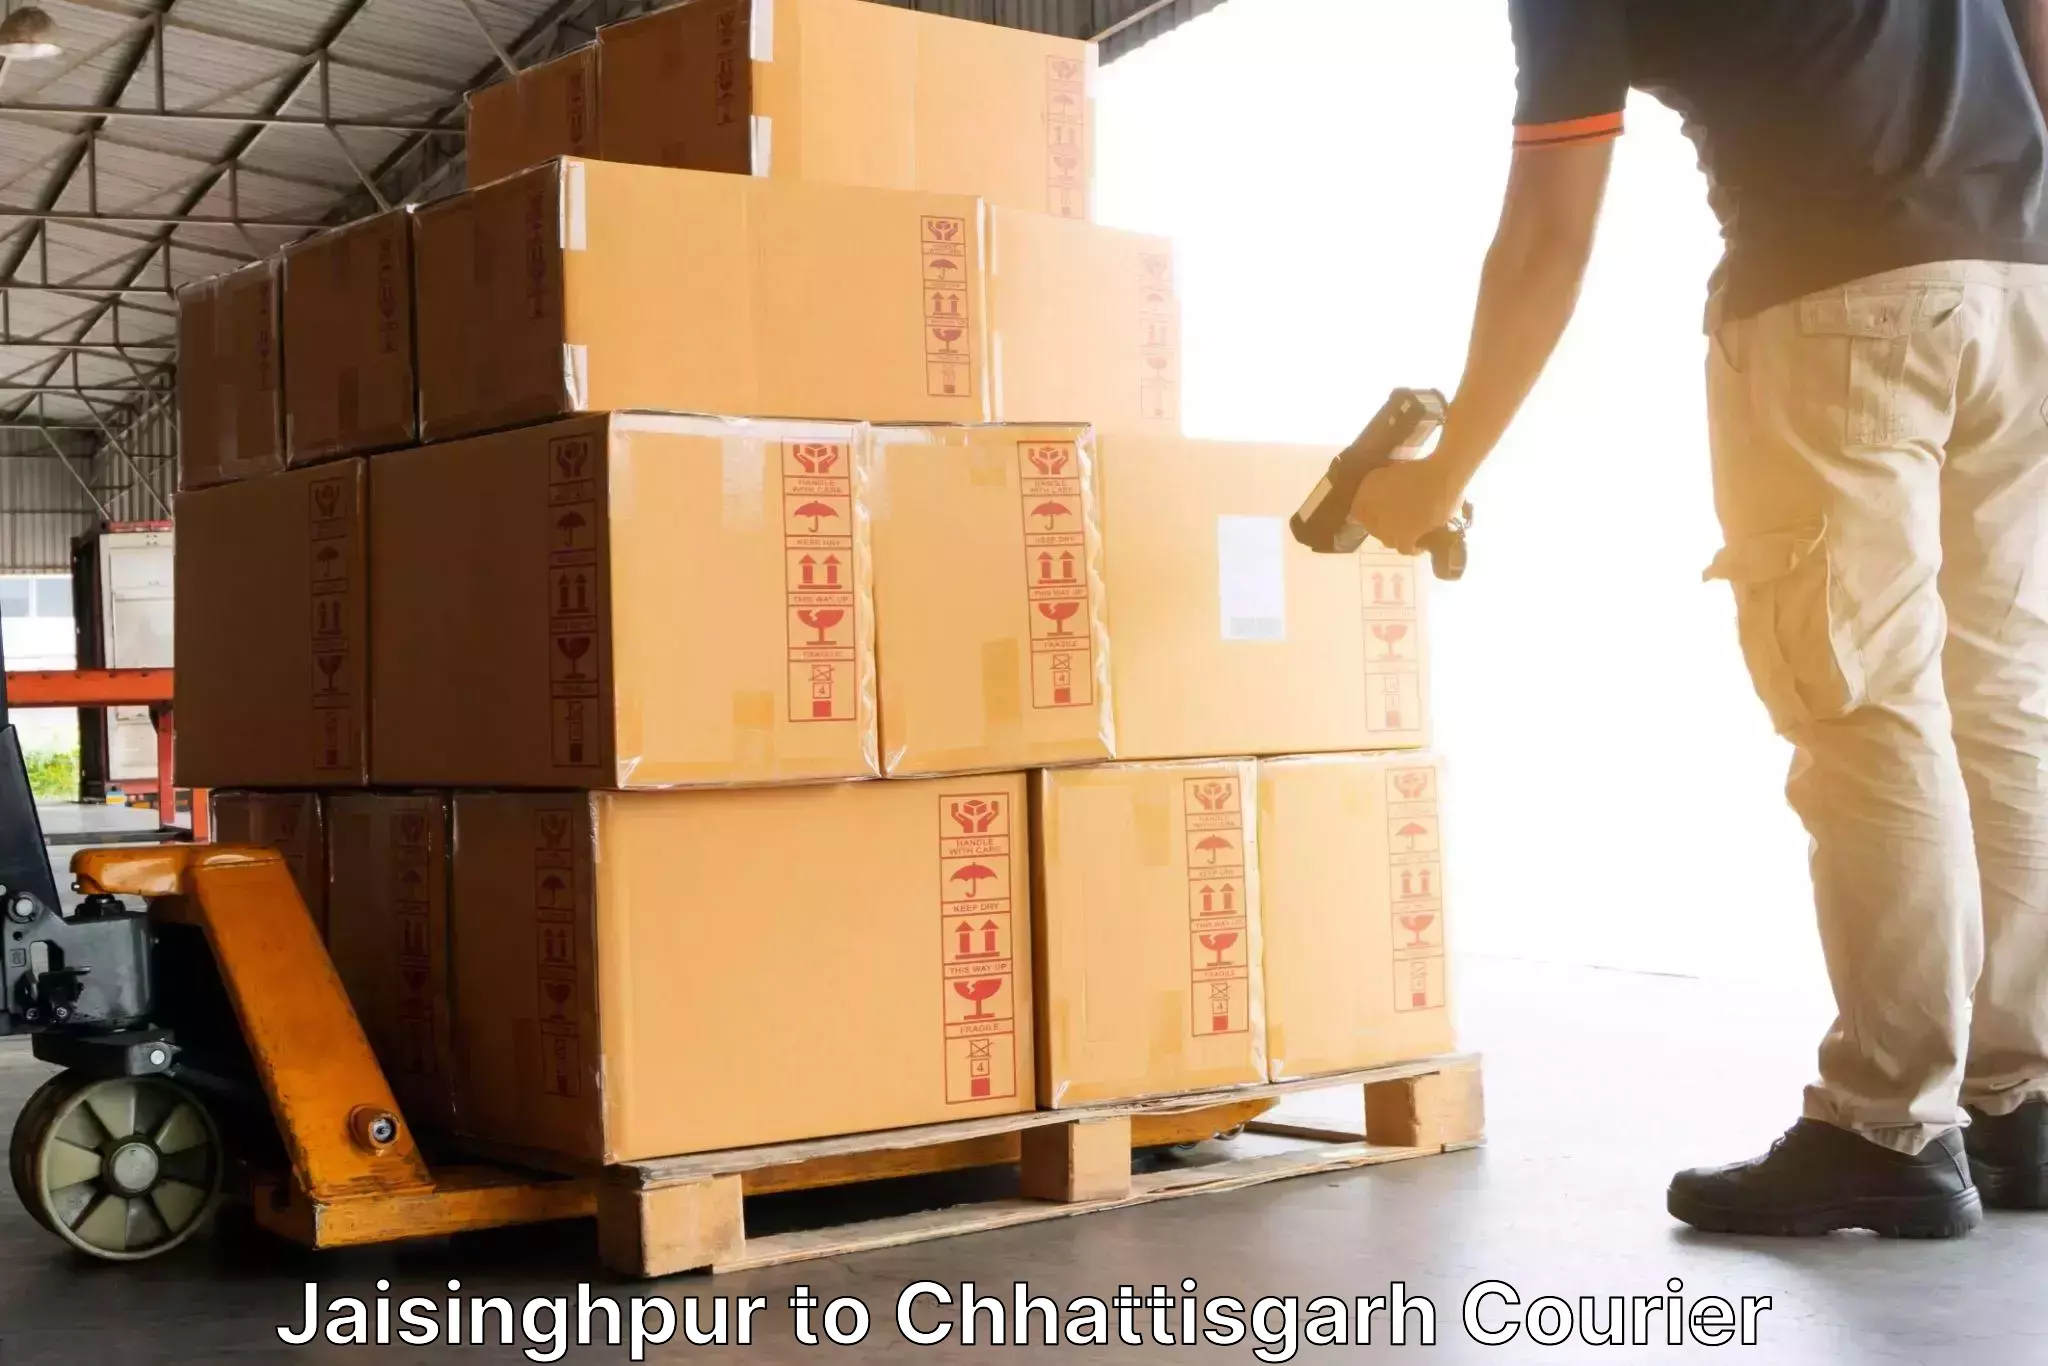 Modern delivery methods Jaisinghpur to Chhattisgarh